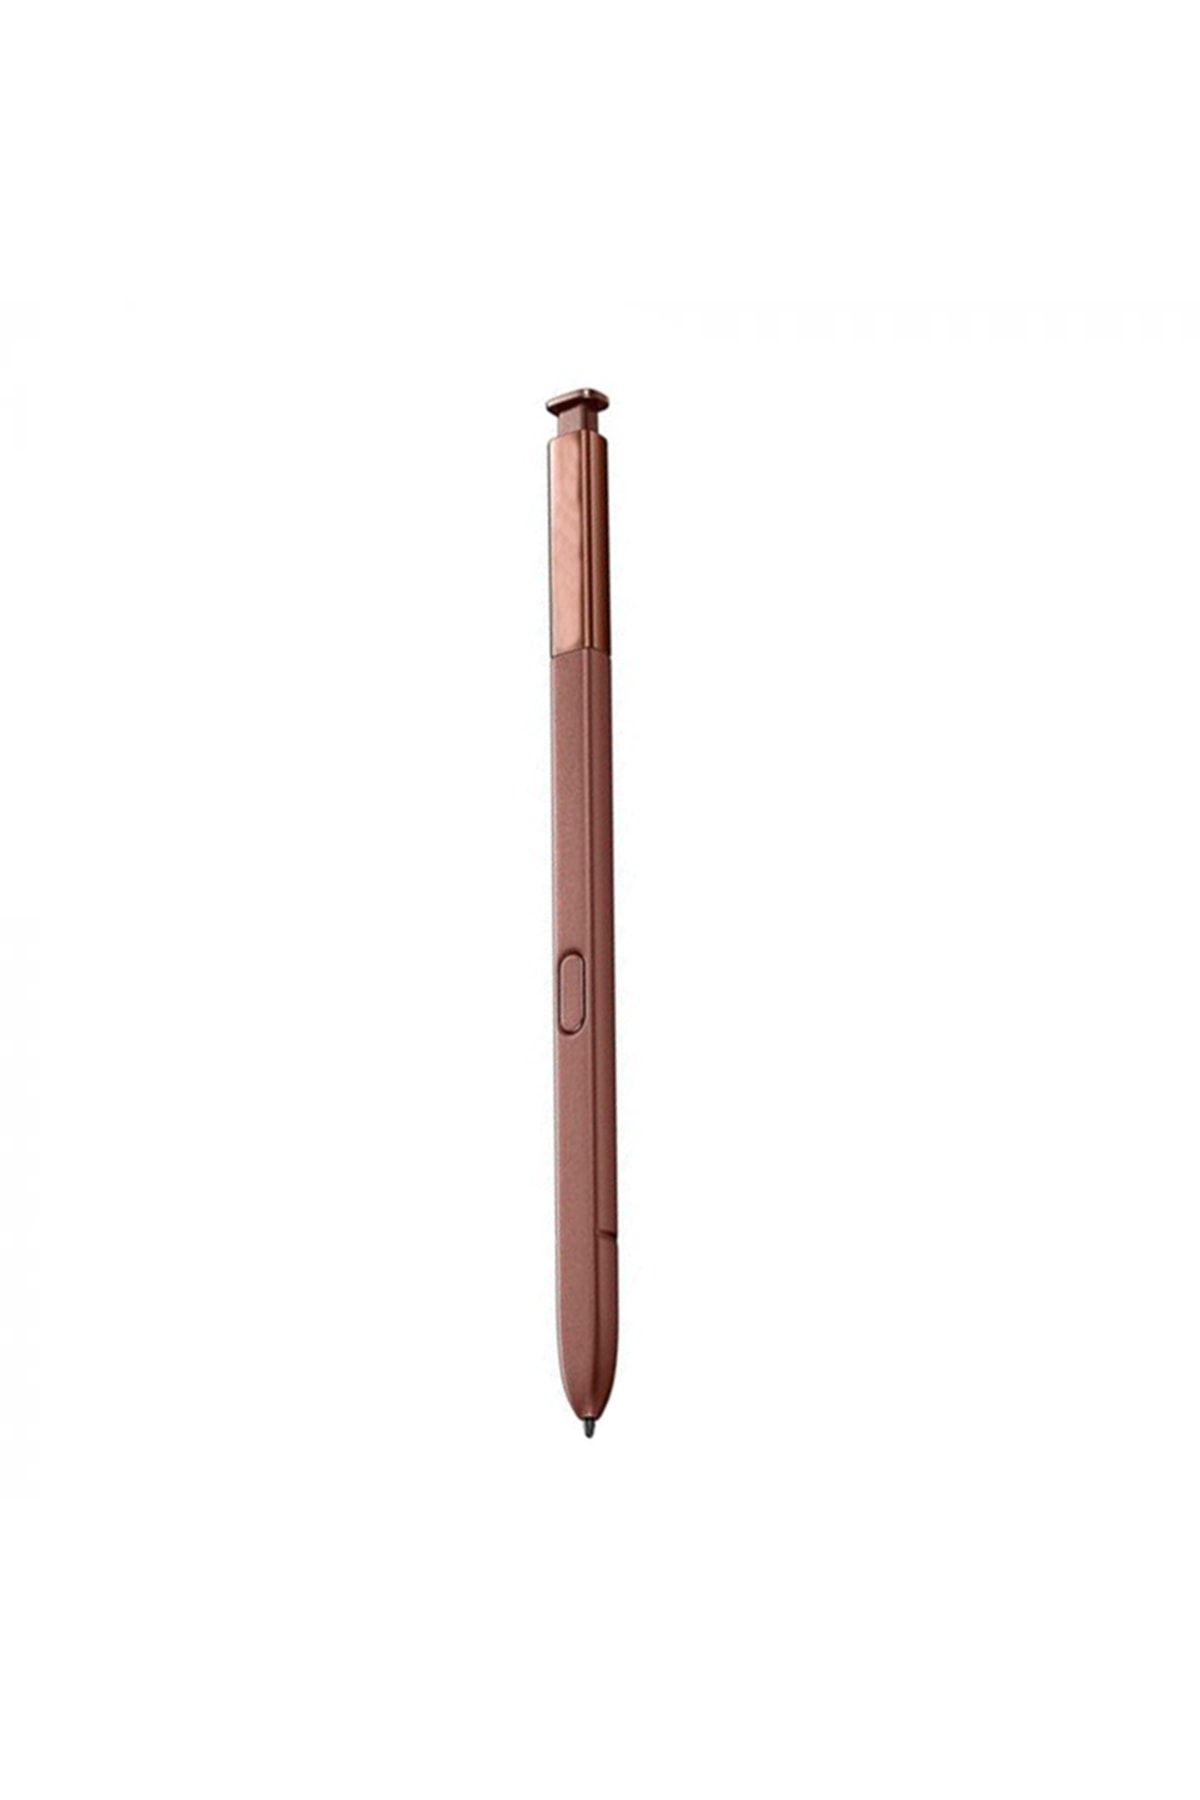 AXYA Samsung Galaxy Note 9 S Pen Stylus Kalem (n960f) Füme